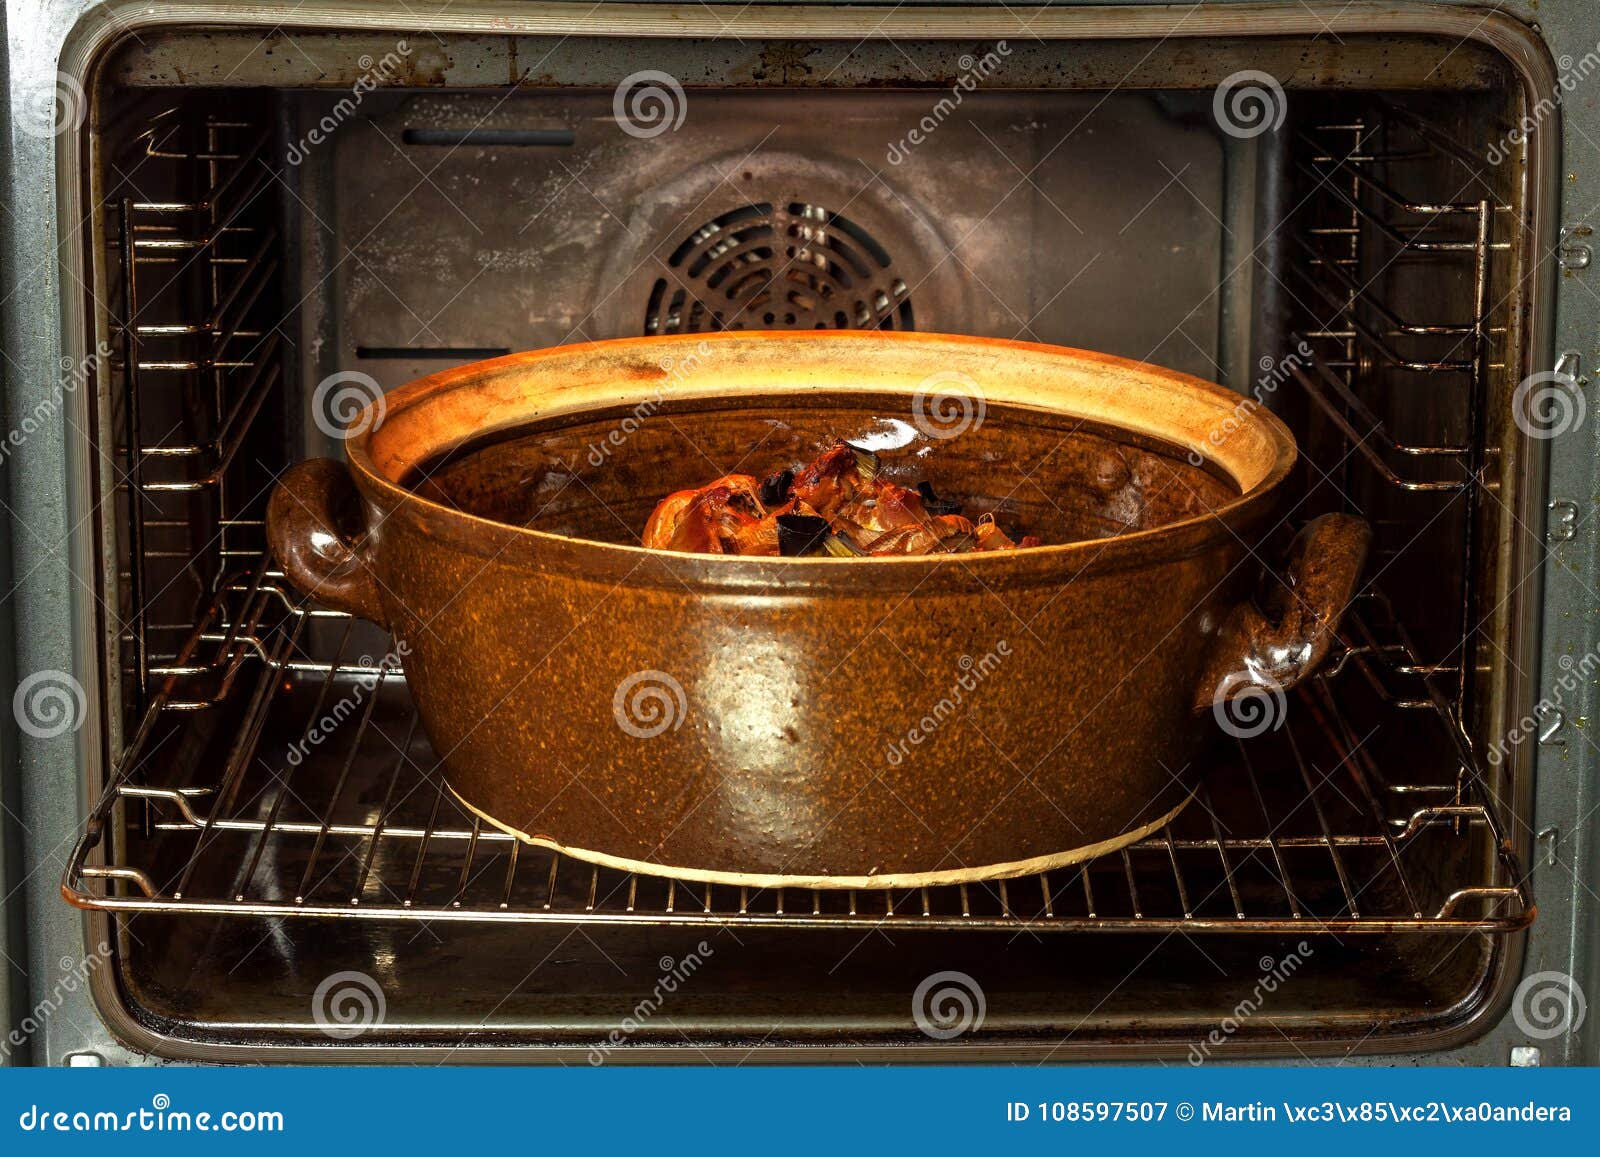 Керамическую посуду можно в духовку. Кастрюля для духовки. Мясо в глиняной посуде в духовке. Блюда в керамической кастрюле в духовке. Говядина в глиняной посуде в духовке.